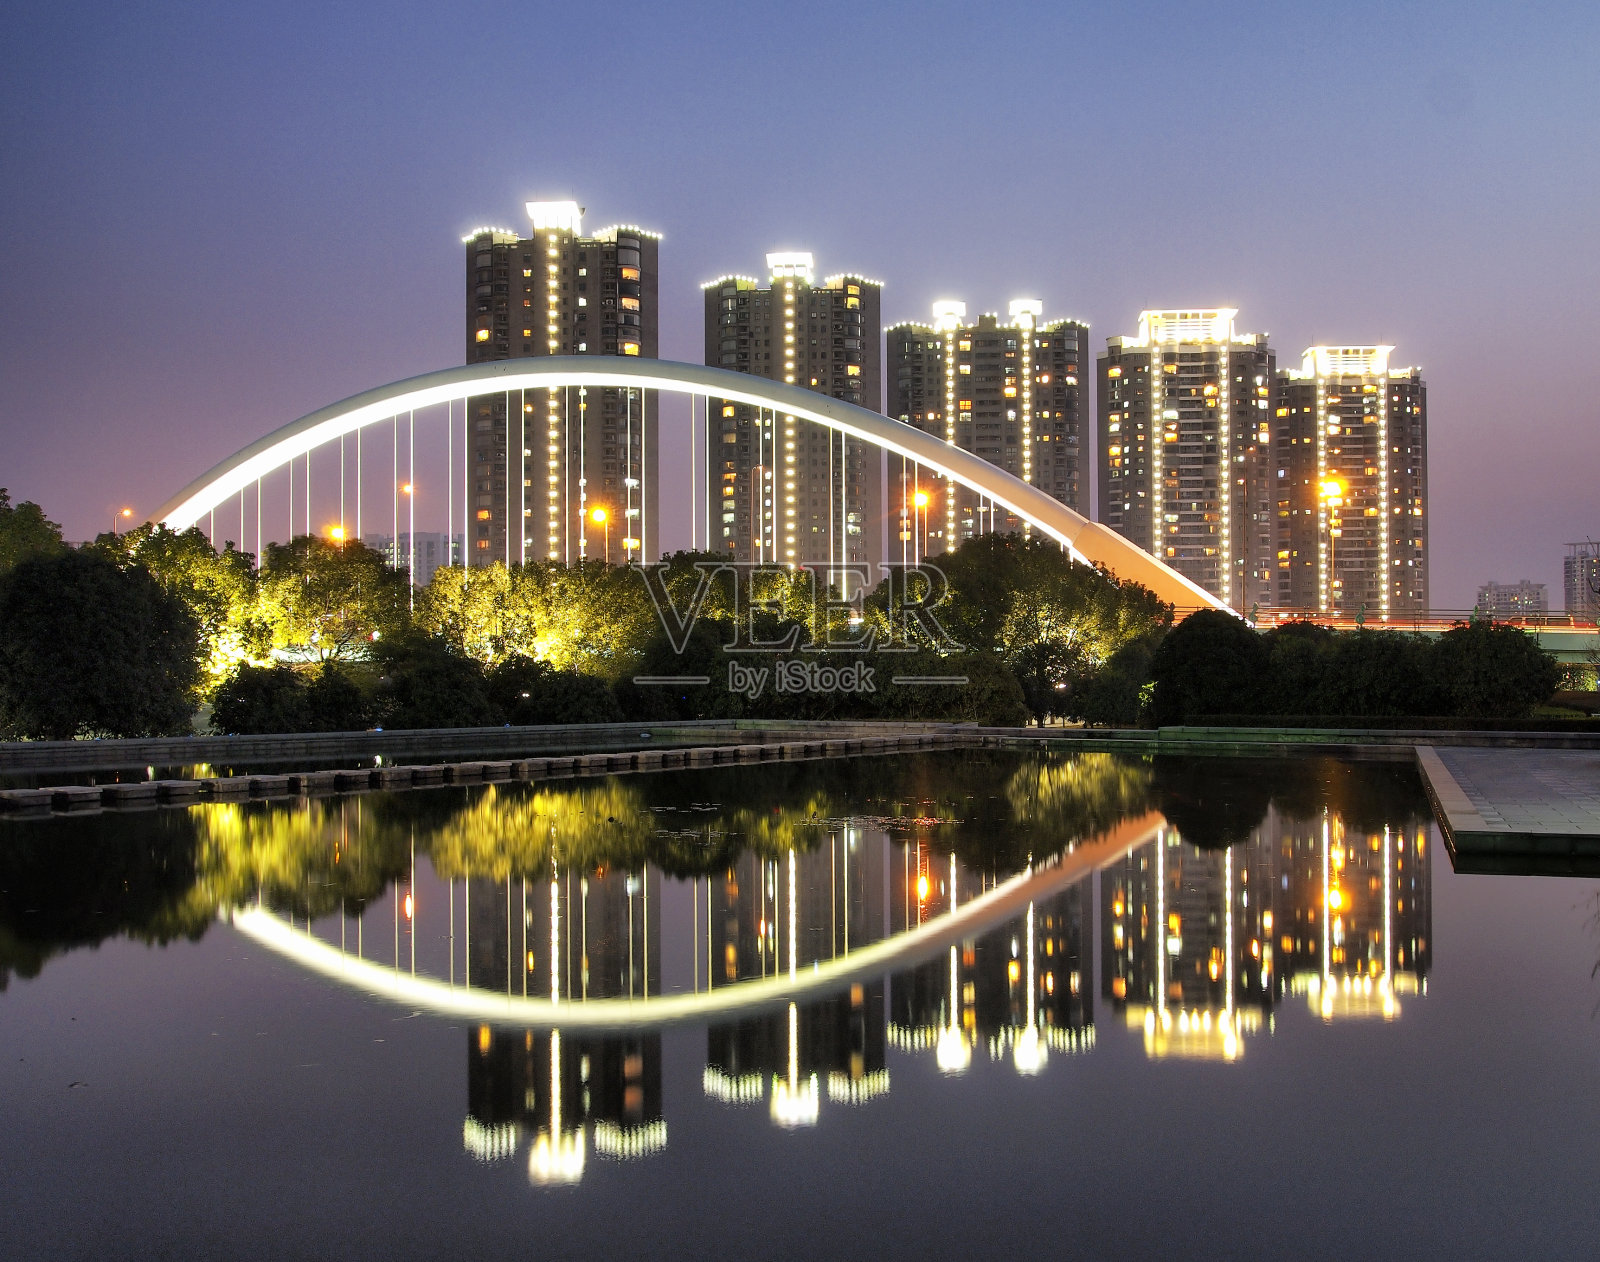 中国宁波秦桥照片摄影图片